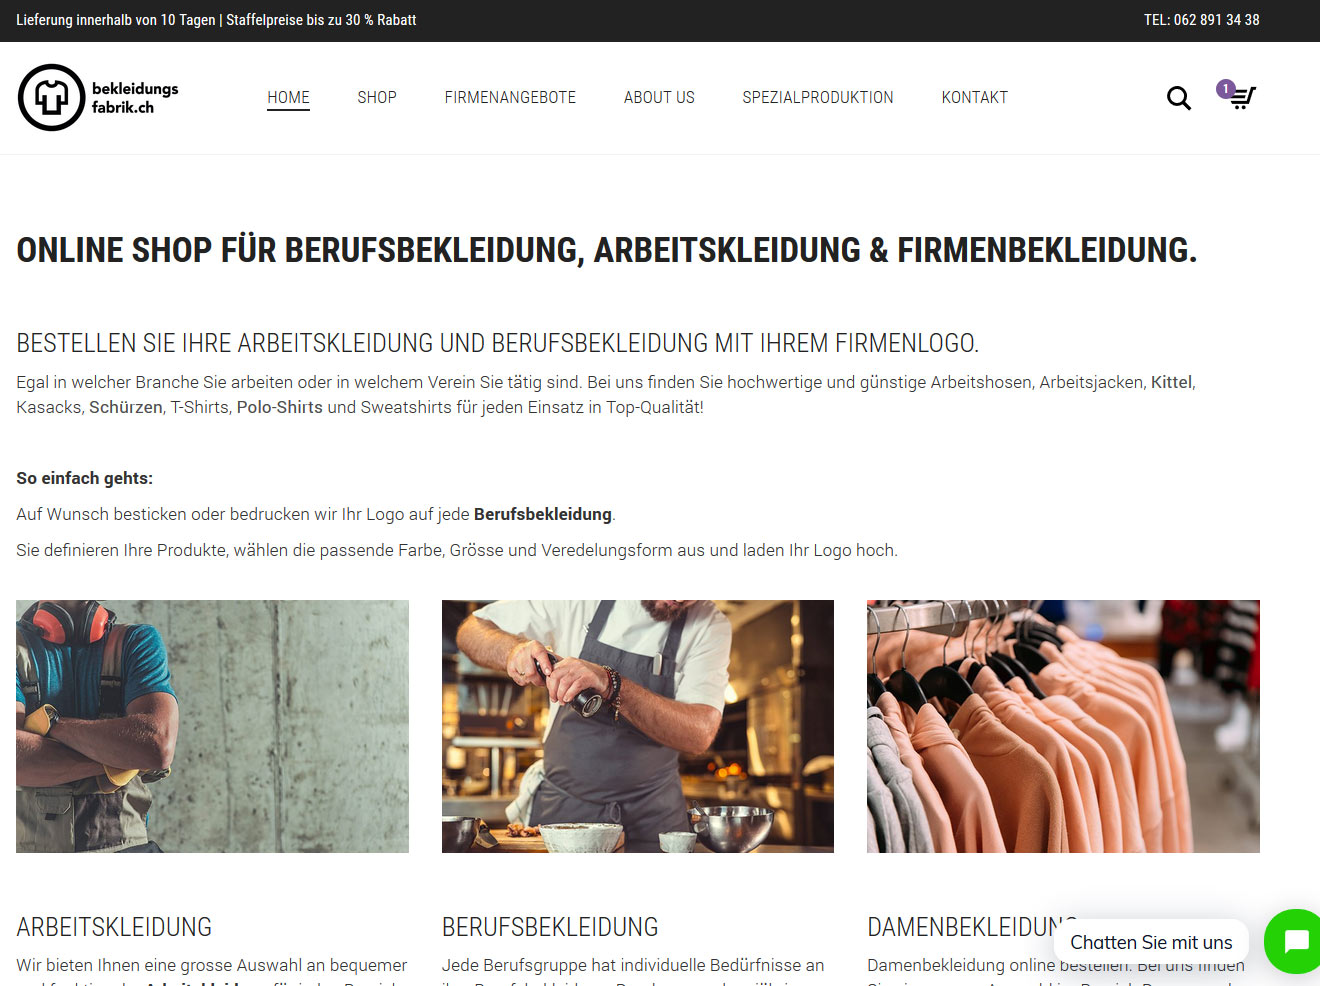 Bekleidungsfabrik- Online Shop für Berufs und Arbeitskleidung